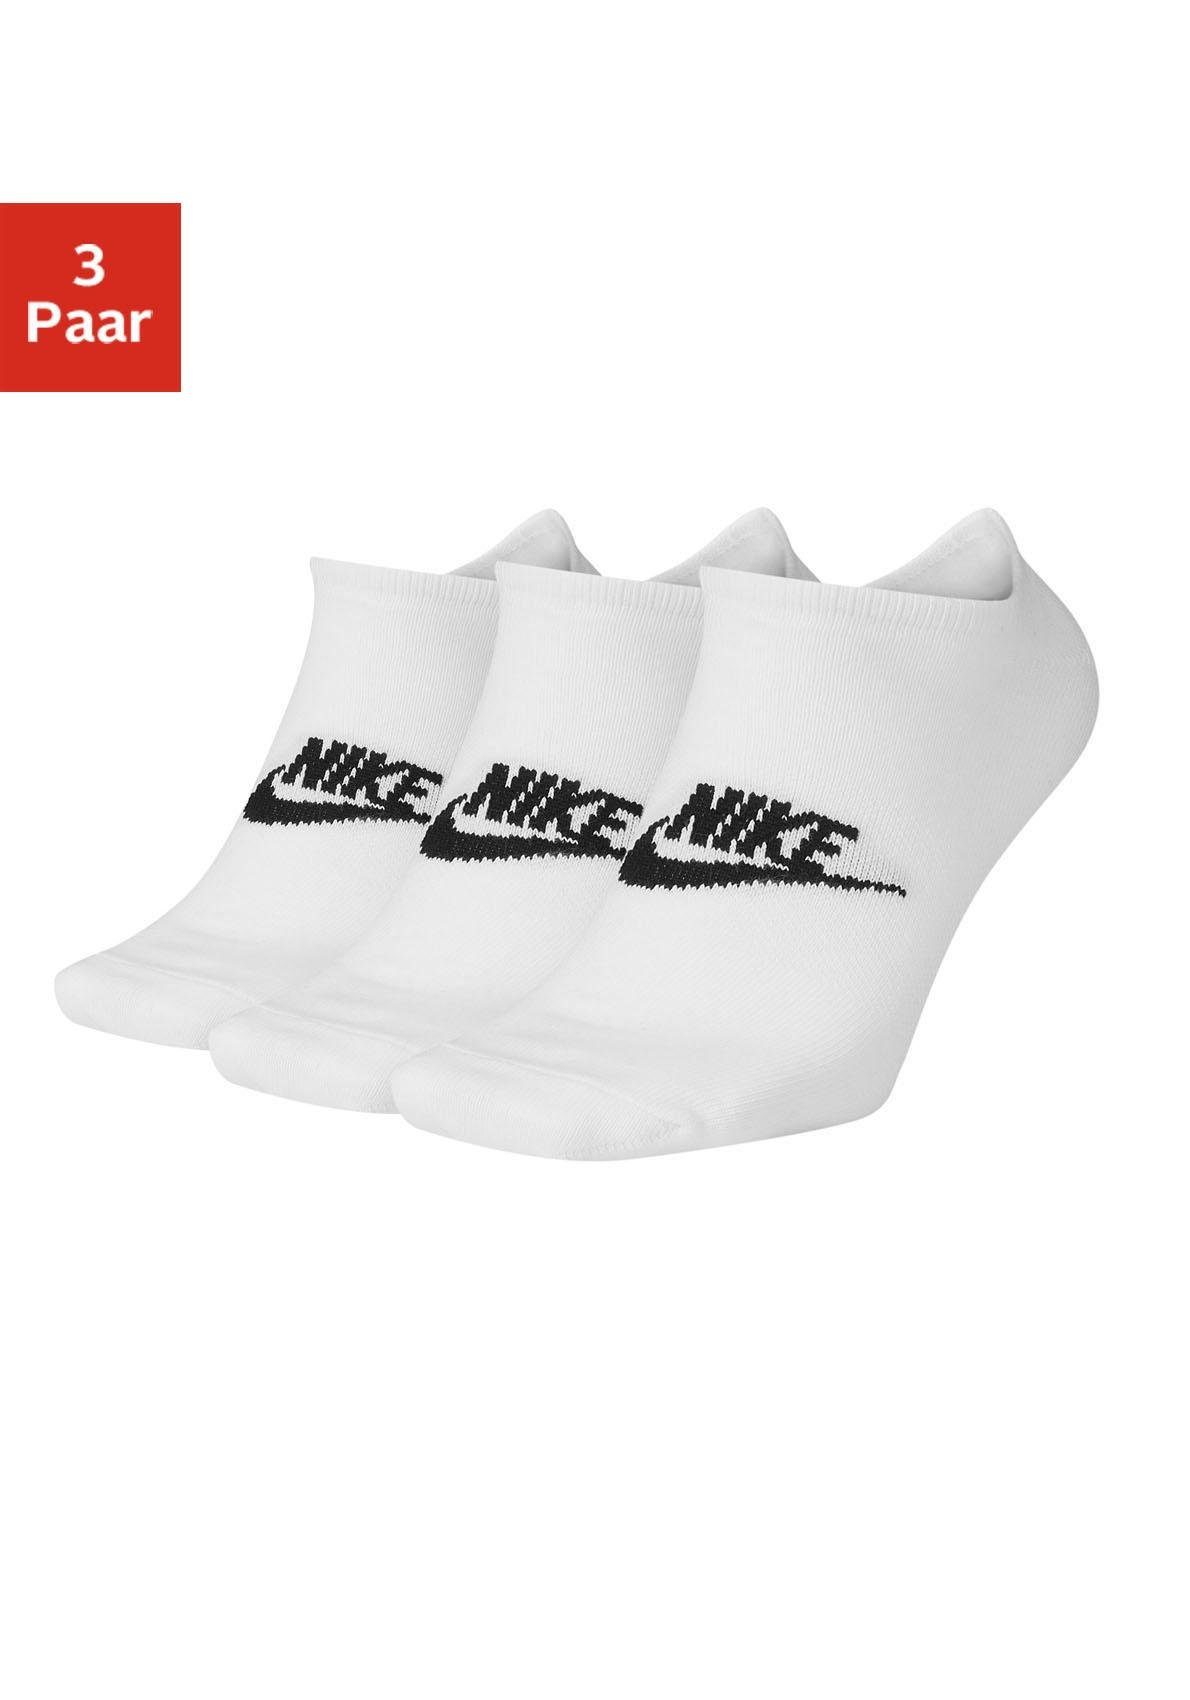 Weiße Nike Socken online kaufen | OTTO